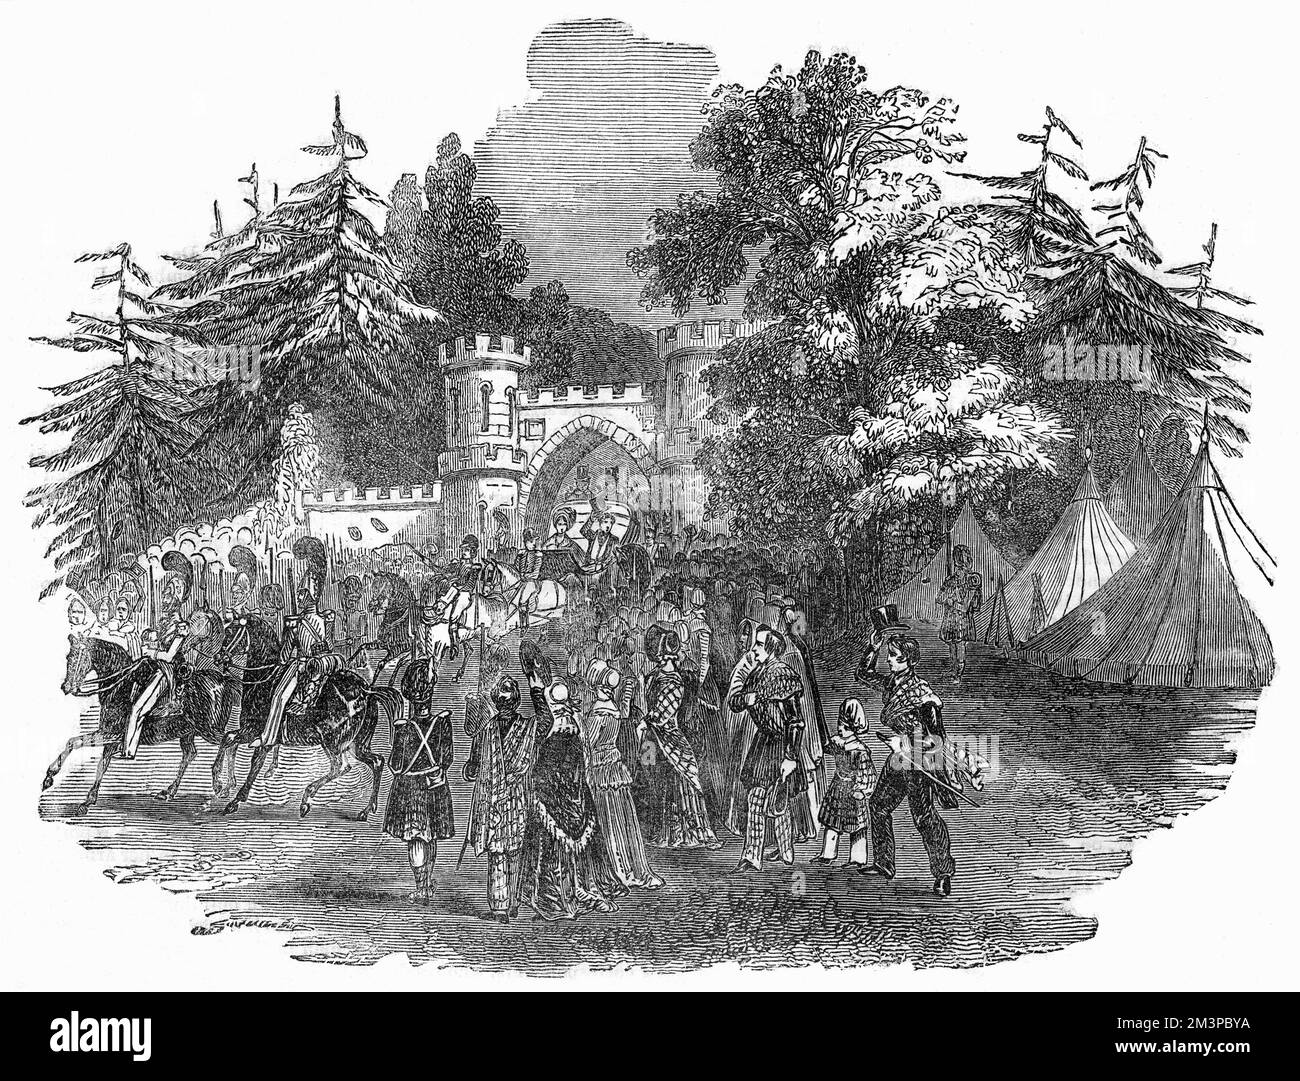 La reine Victoria et le prince Albert, en calèche, entrent dans le parc Taymouth, où ils sont restés trois jours lors de leur première visite en Écosse. Date : septembre 1842 Banque D'Images